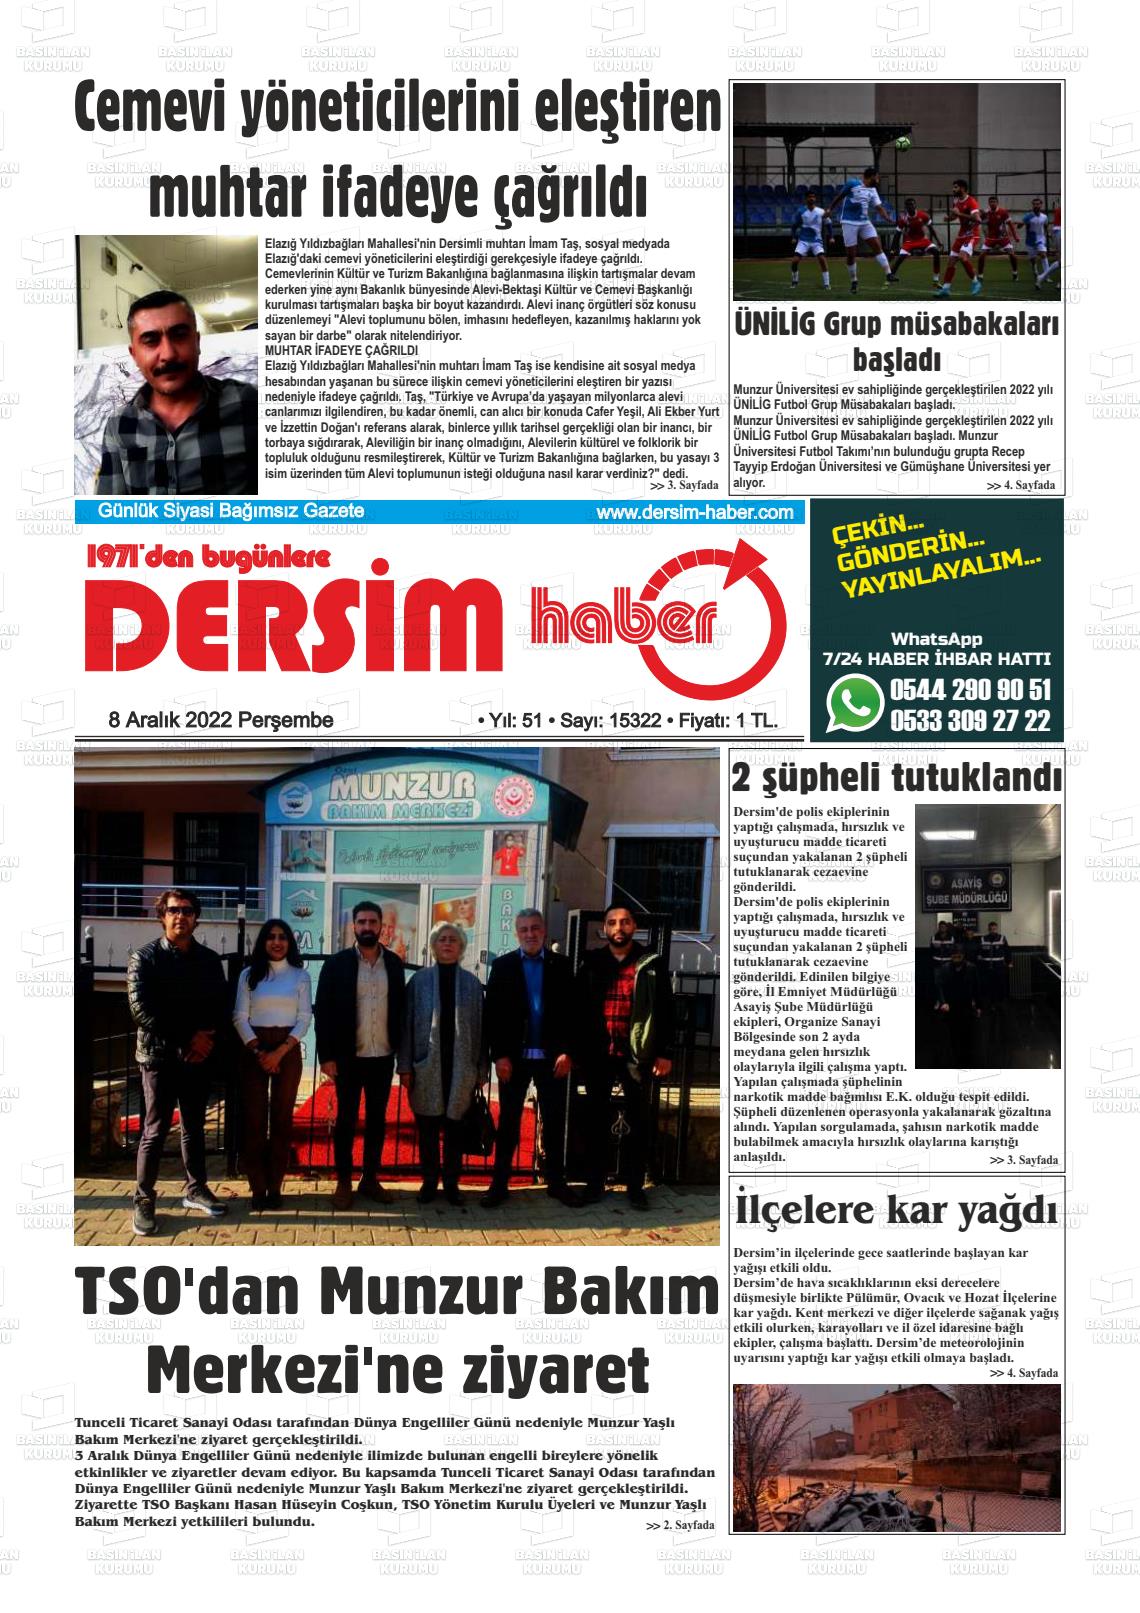 08 Aralık 2022 DERSİM HABER Gazete Manşeti